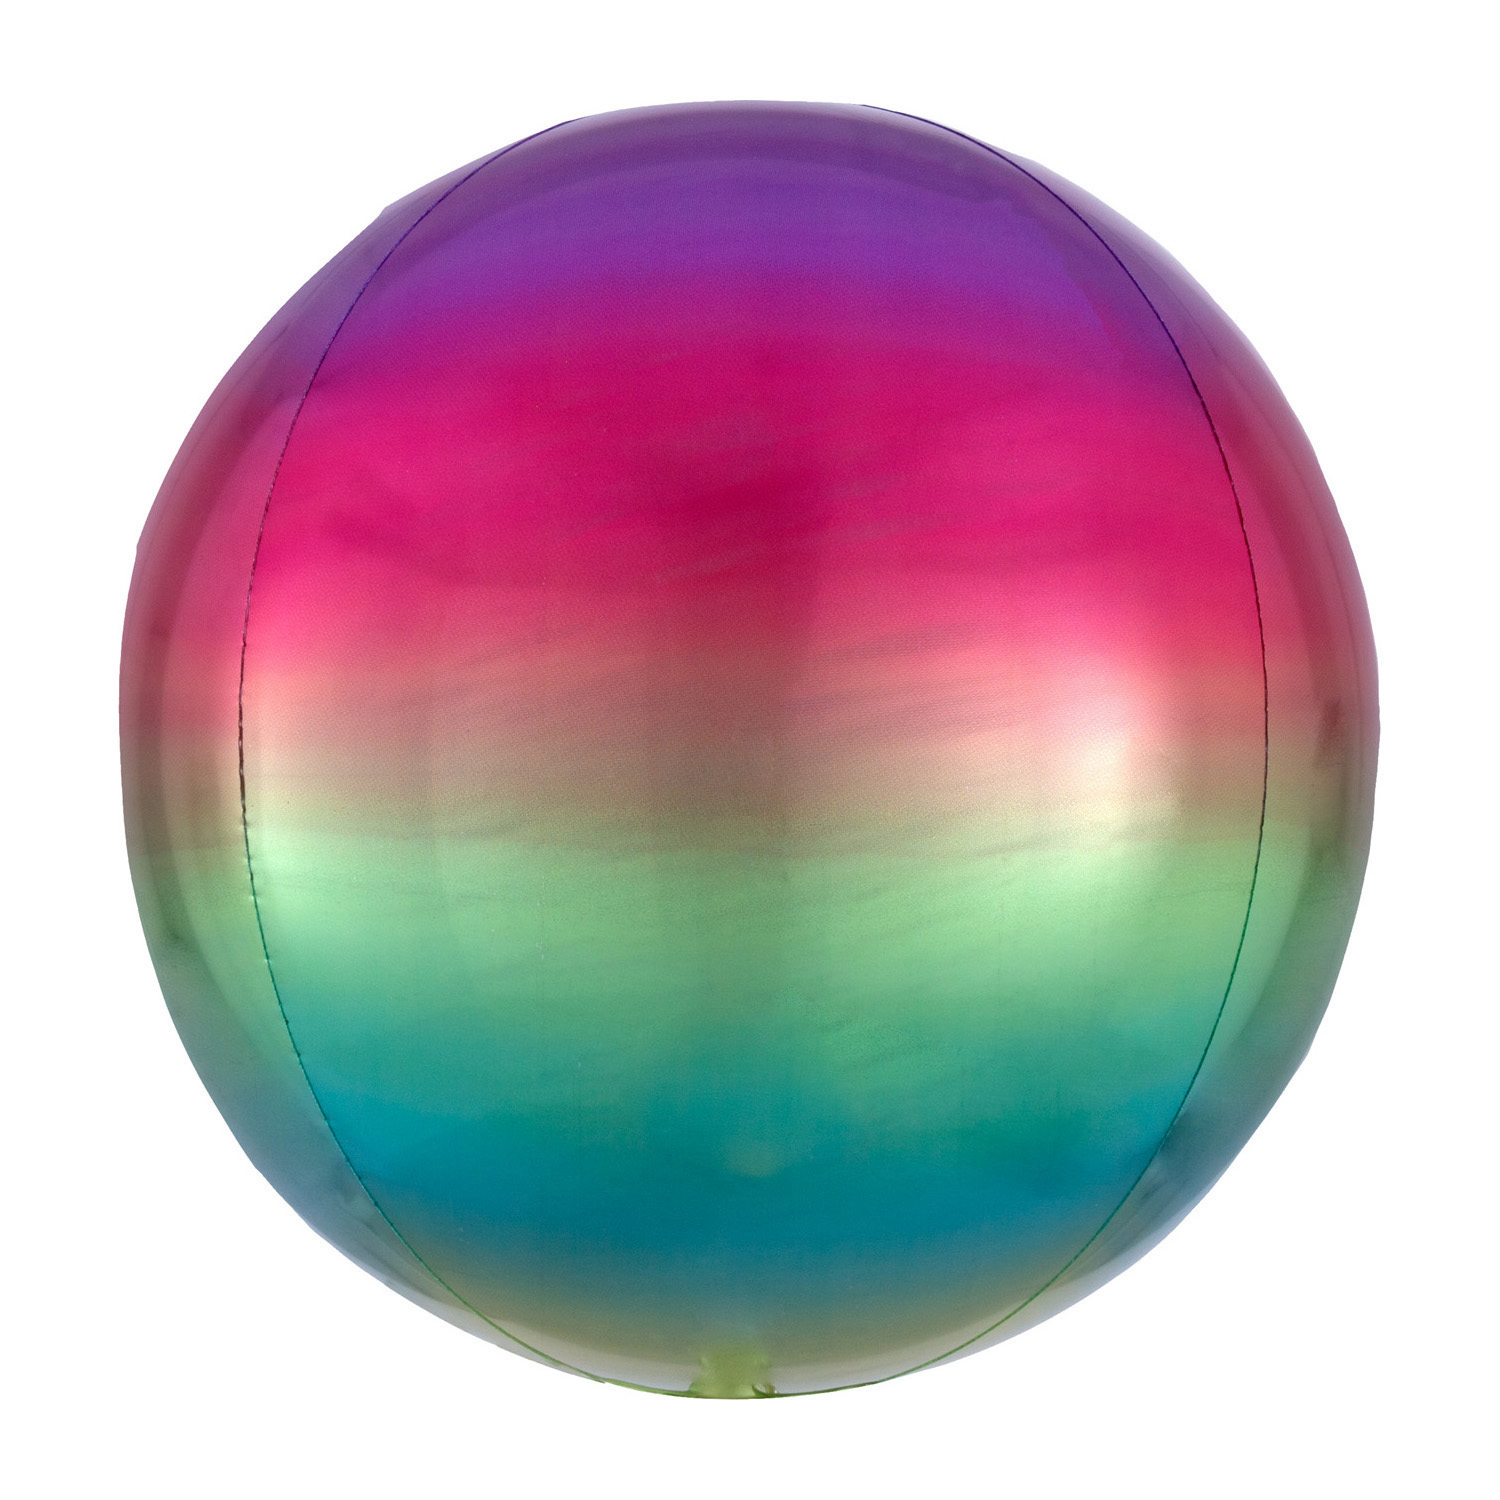 Amscan Ombre fóliový balonek v barvách duhy - koule